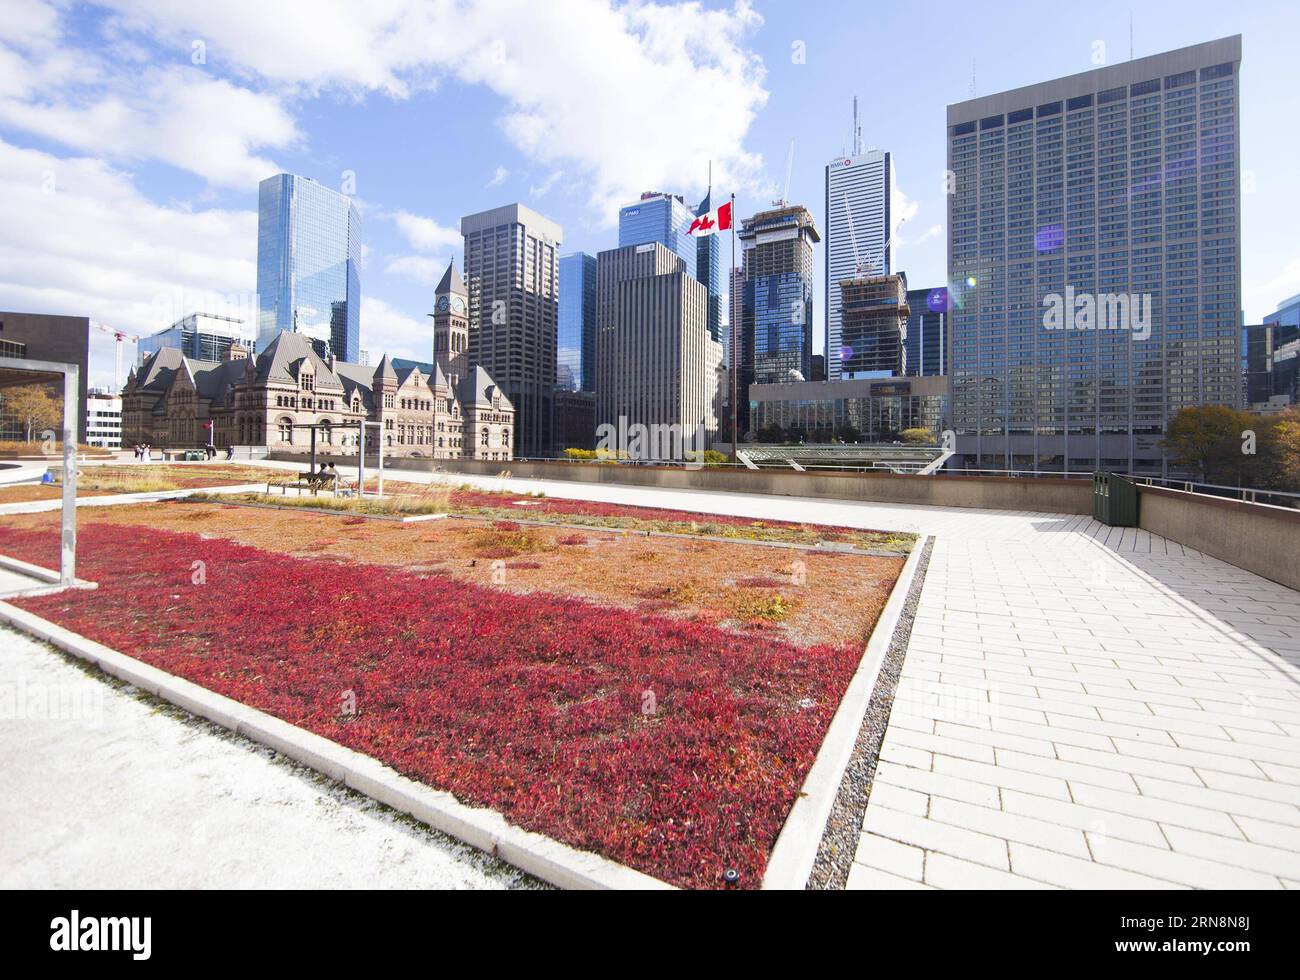 (151031) -- TORONTO, 30. Oktober 2015 -- Toronto City Hall's Podium Green roof is See in Toronto, Kanada, 30. Oktober 2015. Toronto ist die erste Stadt in Nordamerika, die eine Satzung hat, die den Bau von Gründächern für Neubauten vorschreibt und regelt. Vom 1. Februar 2010 bis zum 1. März 2015 wurden in Toronto 260 Gründächer mit einer Grünfläche von 196.000 Quadratmetern errichtet. In Toronto gibt es bisher insgesamt 444 begrünte Dächer. ) KANADA-TORONTO-GRÜNES DACH ZouxZheng PUBLICATIONxNOTxINxCHN Toronto OCT 30 2015 Toronto City Hall S Podium Green Roof IS Lakes in Toronto Kanada OCT 30 2015 Stockfoto